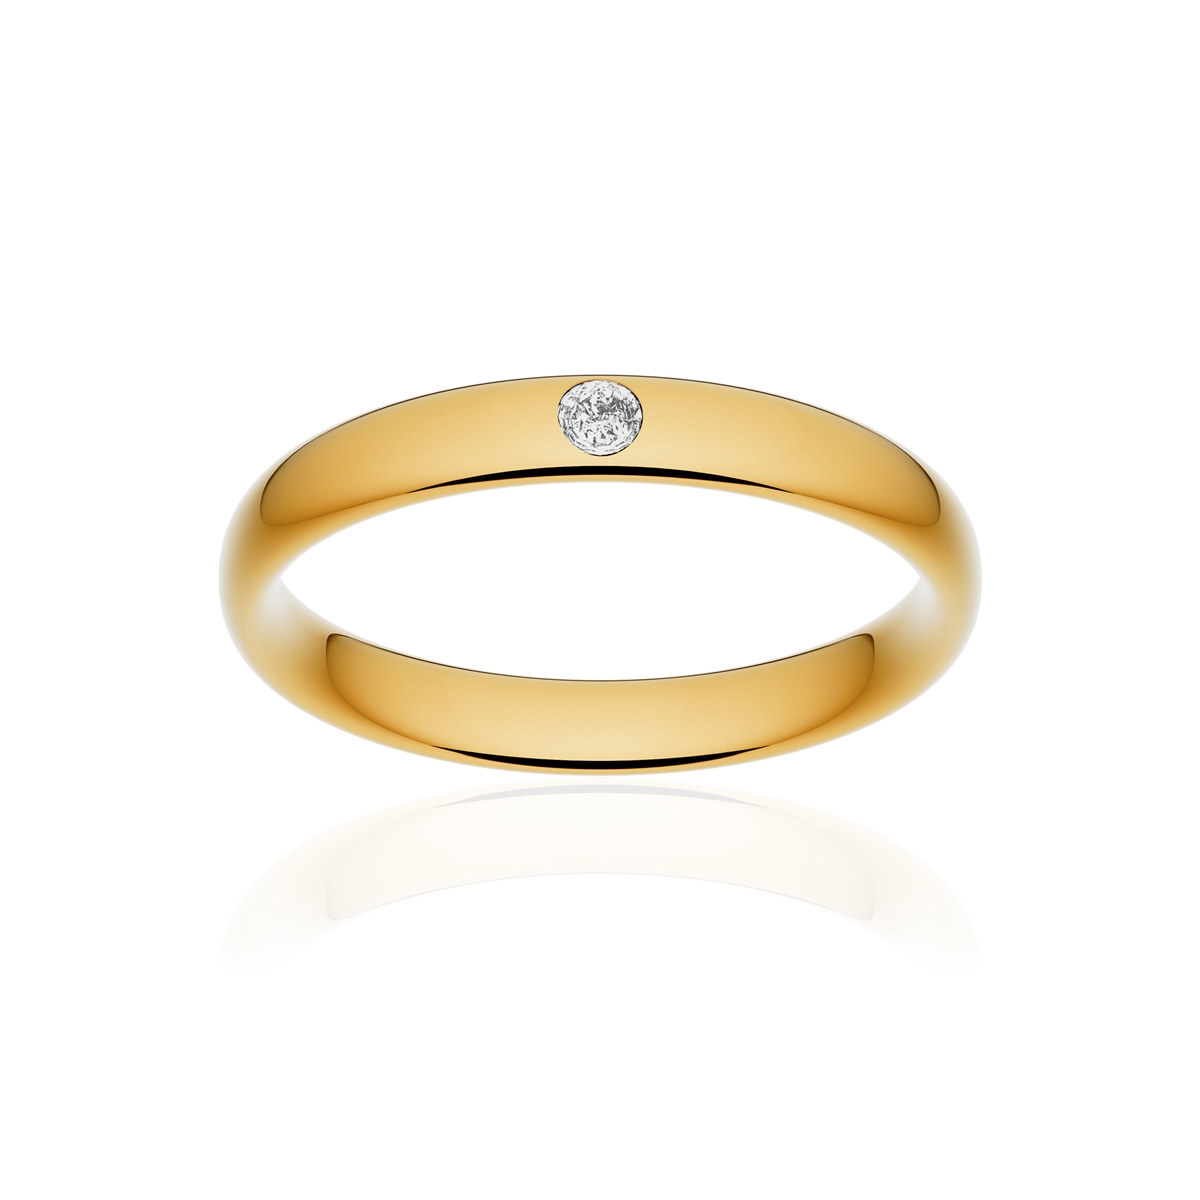 Alliance or 750 jaune poli ruban confort 3,5mm diamant brillant